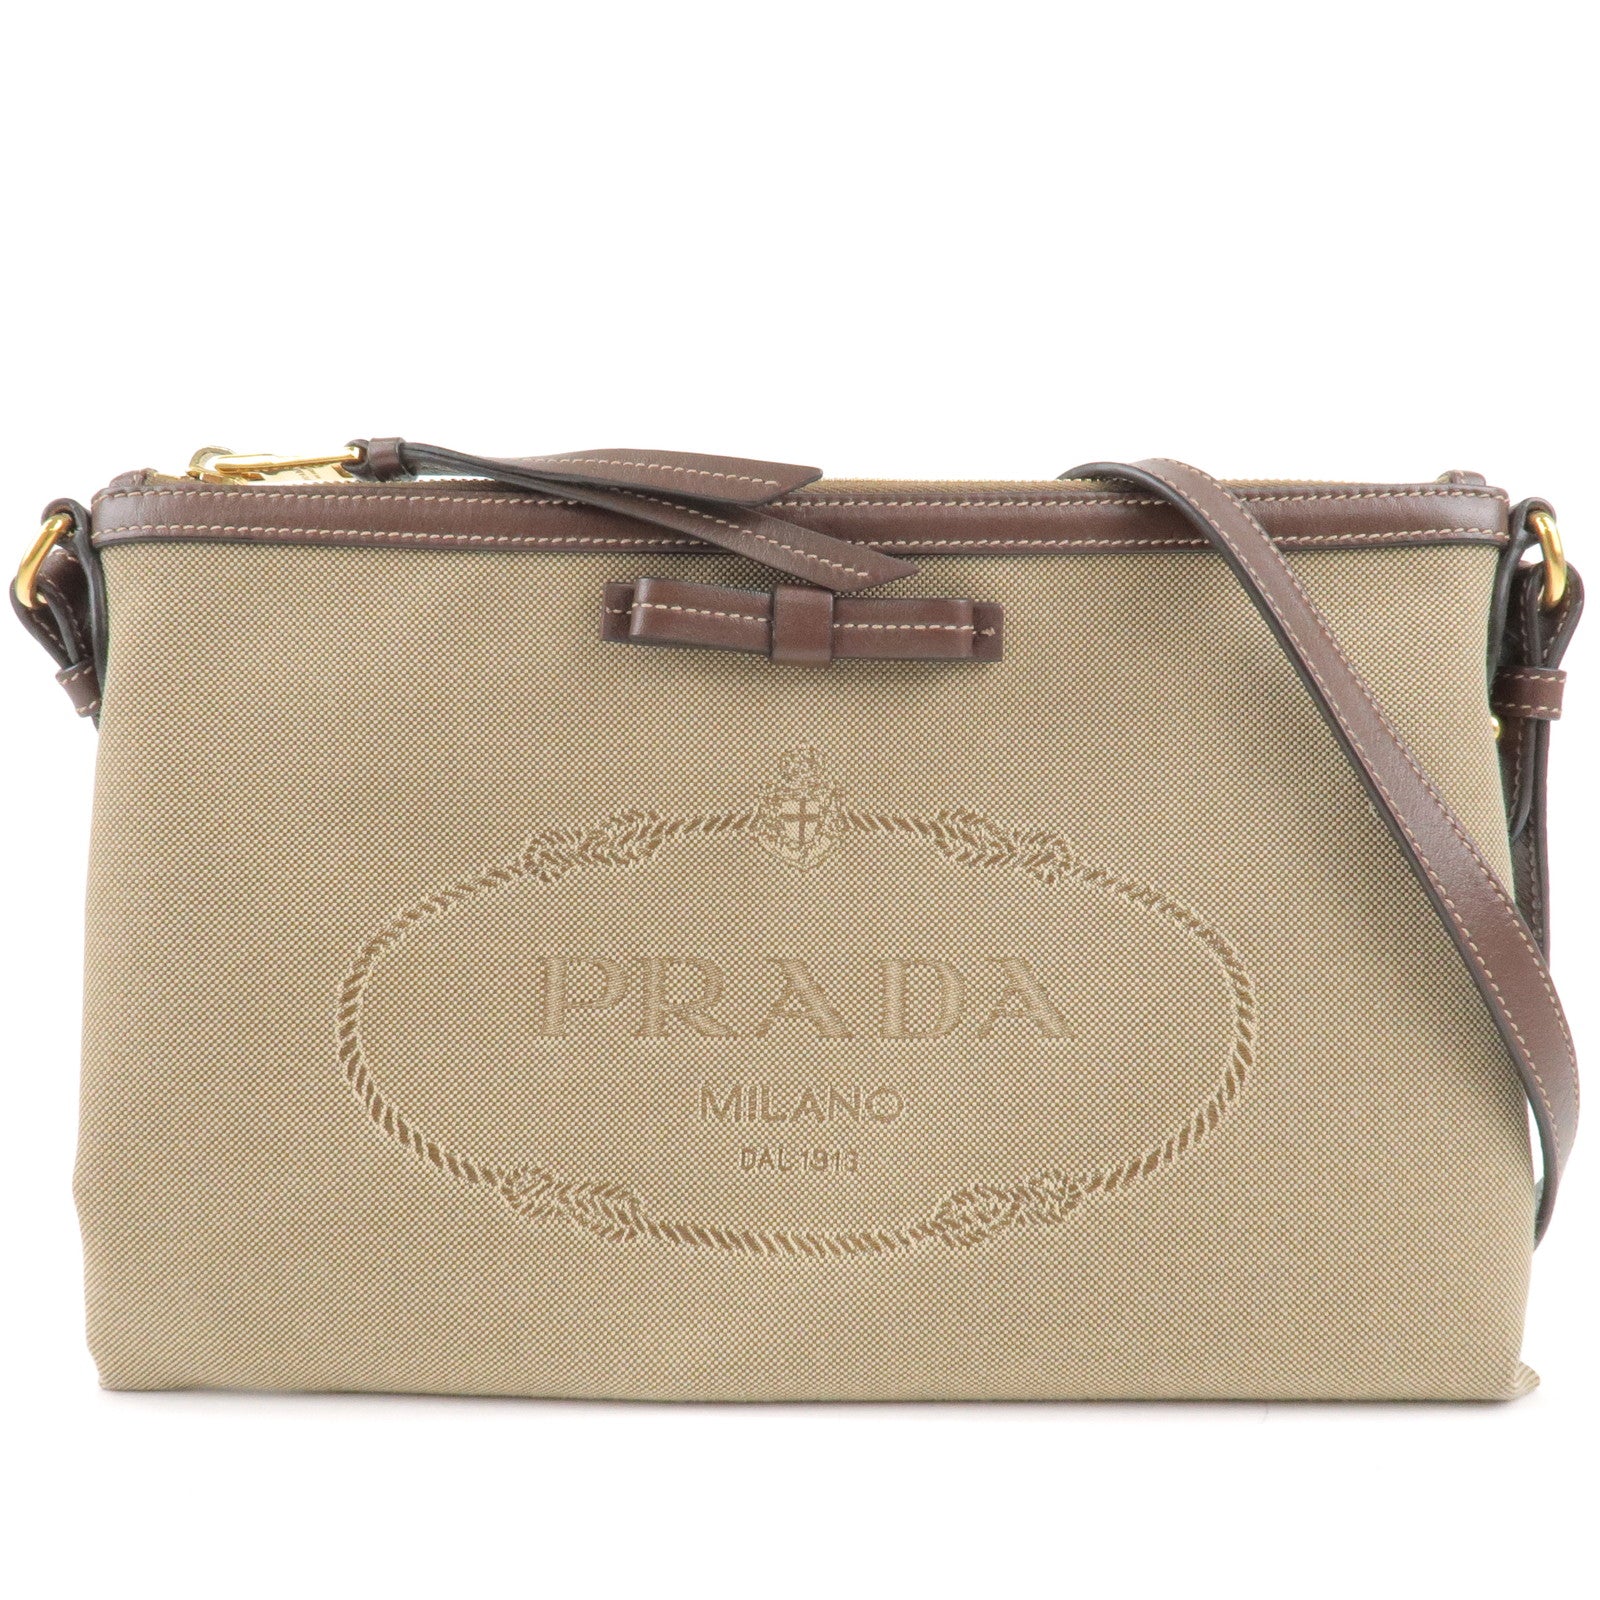 PRADA-Logo-Jacquard-Leather-Shoulder-Bag-Beige-Brown